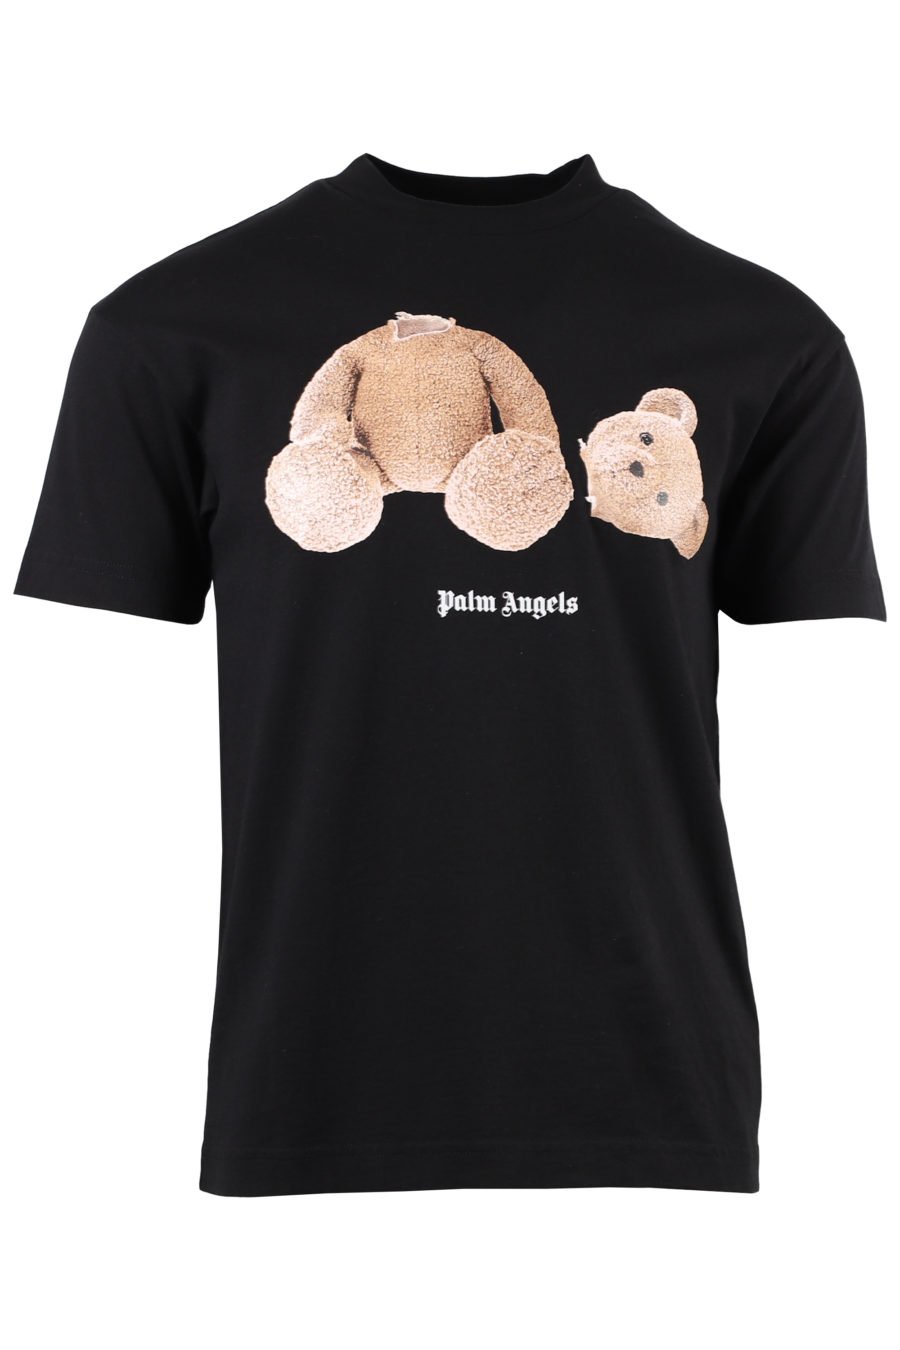 T-shirt preta com urso e logótipo nas costas - IMG 1328